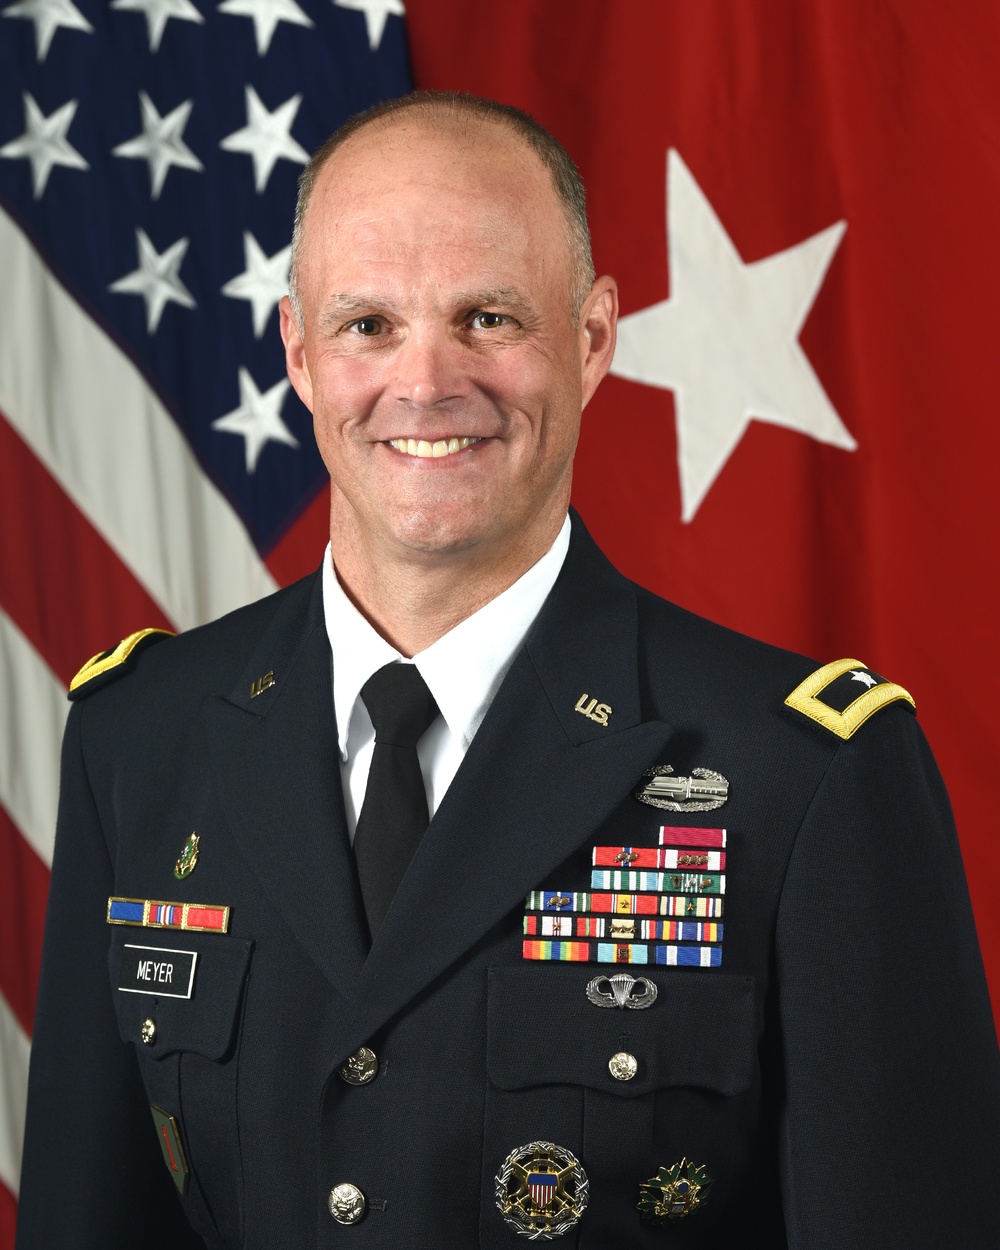 U.S. Army Brig. Gen. John B. Meyer, III.